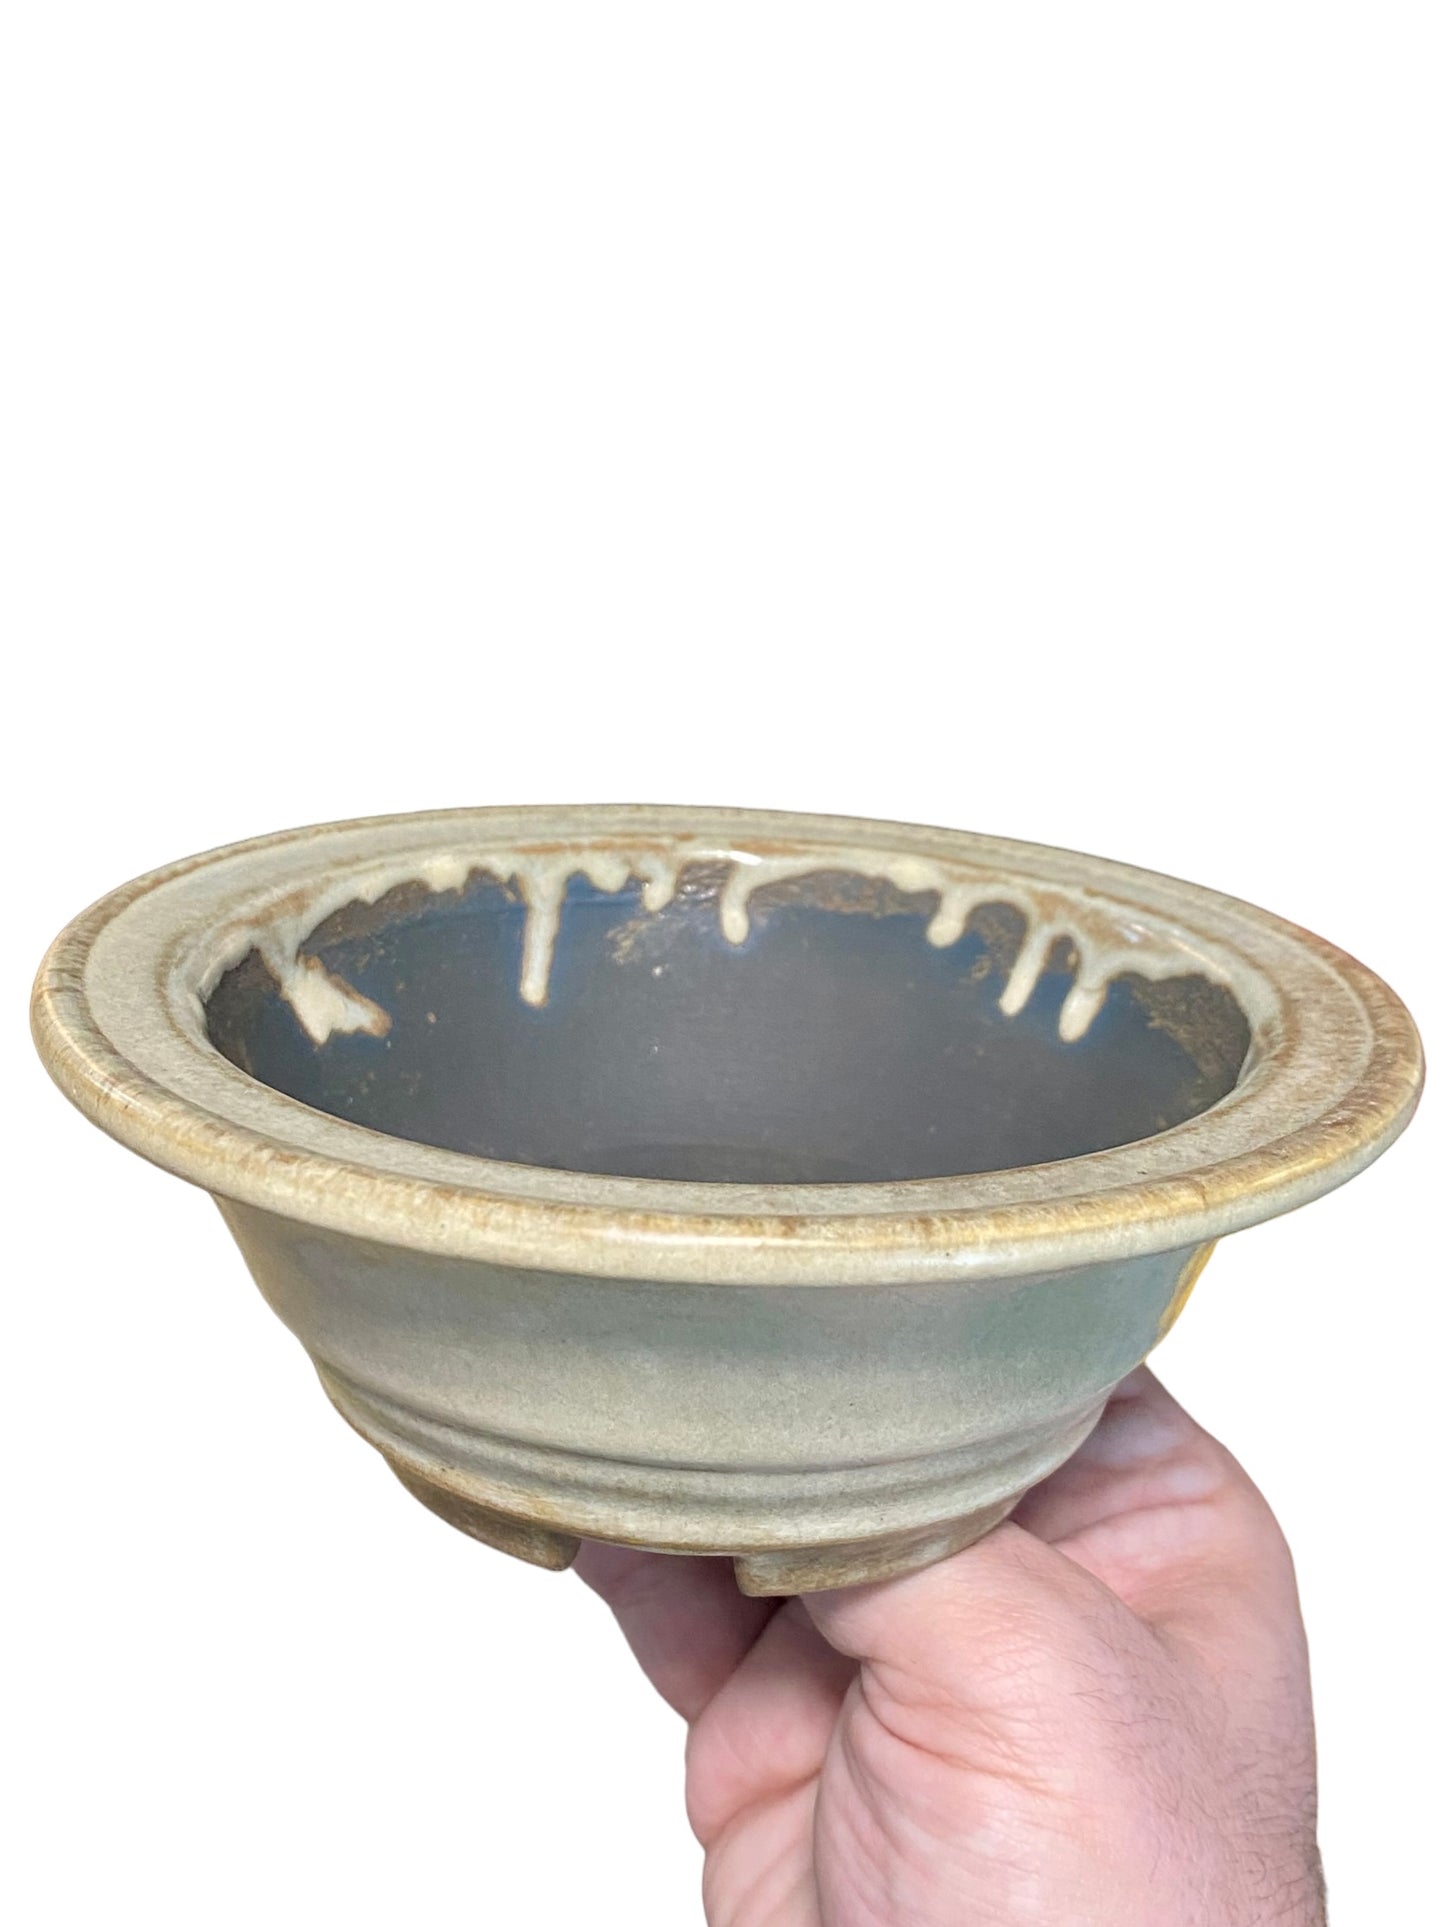 Koyo - Rare Older Bowl Bonsai or Accent Pot